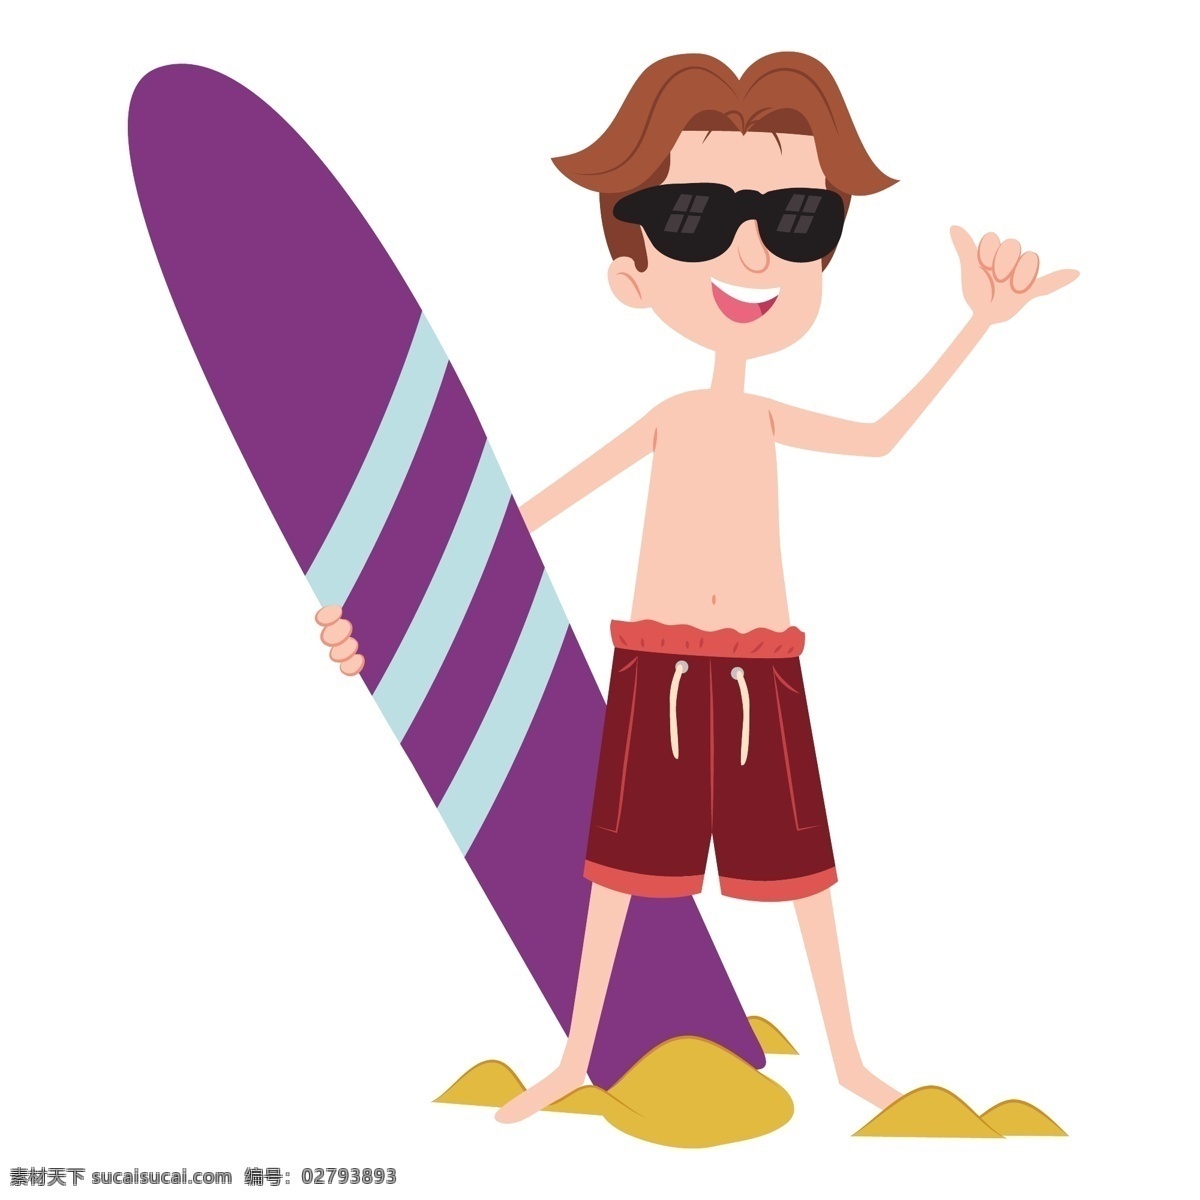 卡通 手绘 冲浪 青年 少年 青年少年 冲浪运动 运动 冲浪青年 冲浪少年 少年冲浪 冲浪滑板